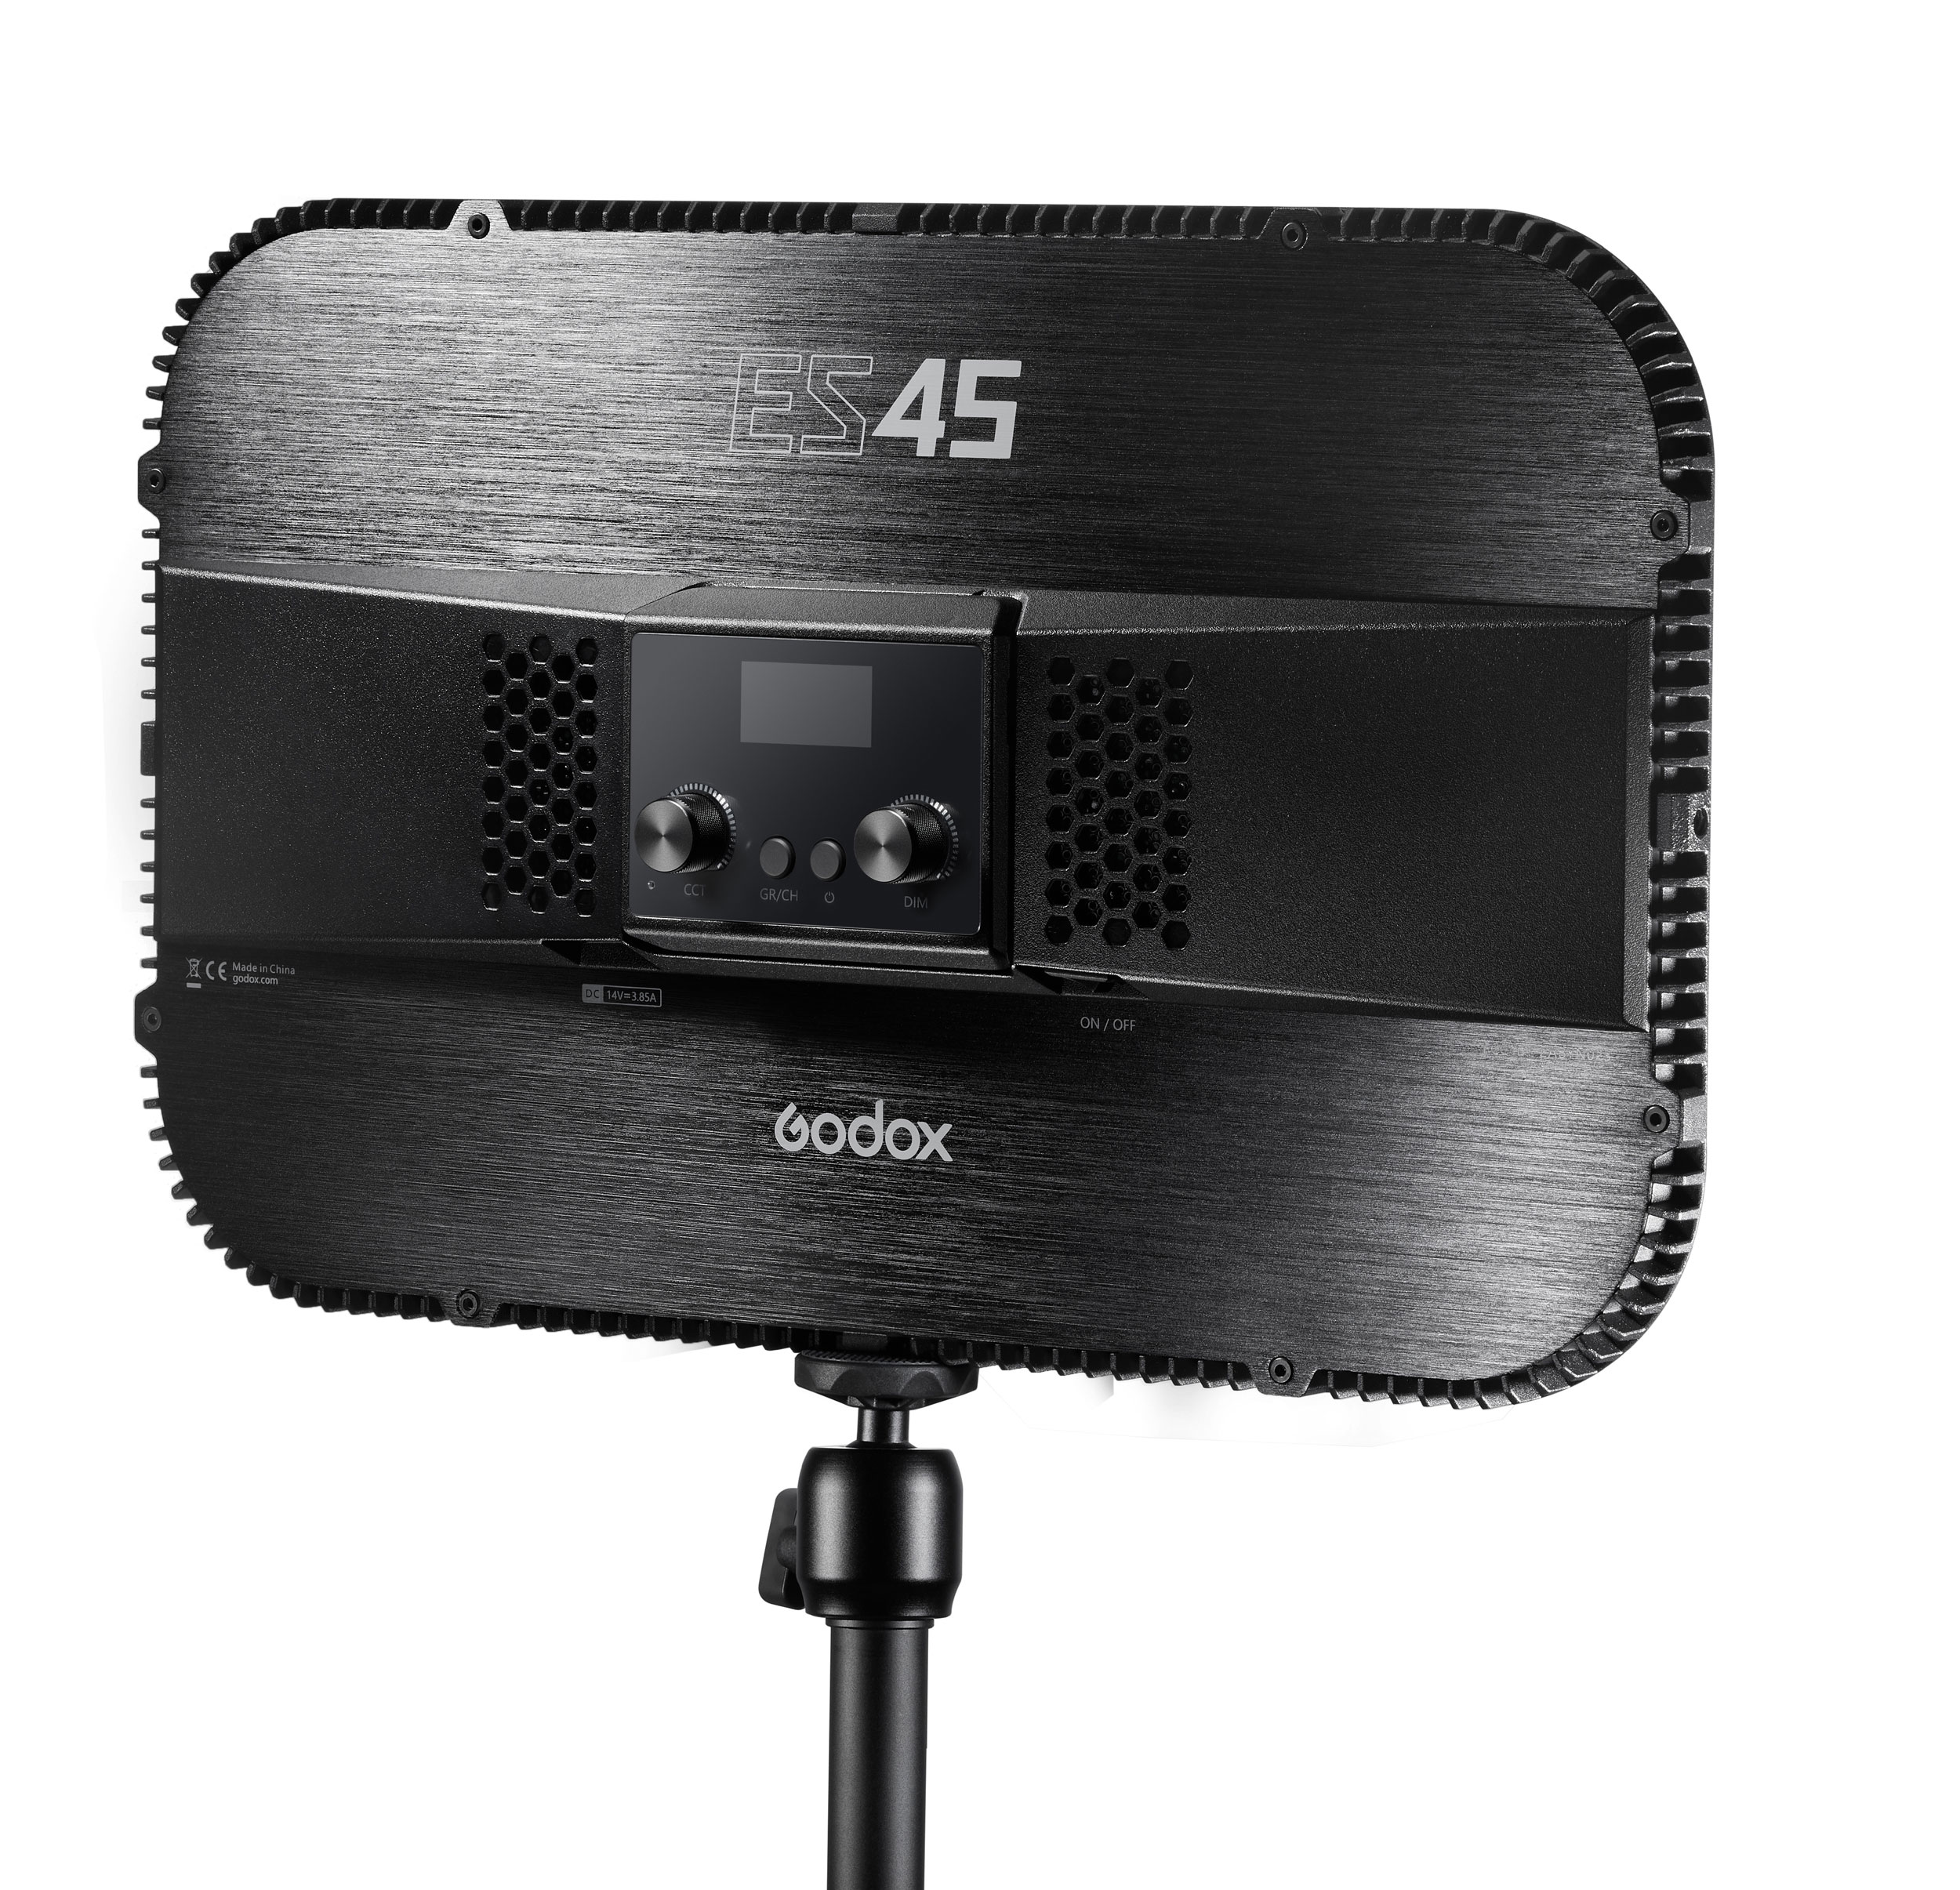    Godox ES45 Kit       Ultra-mart